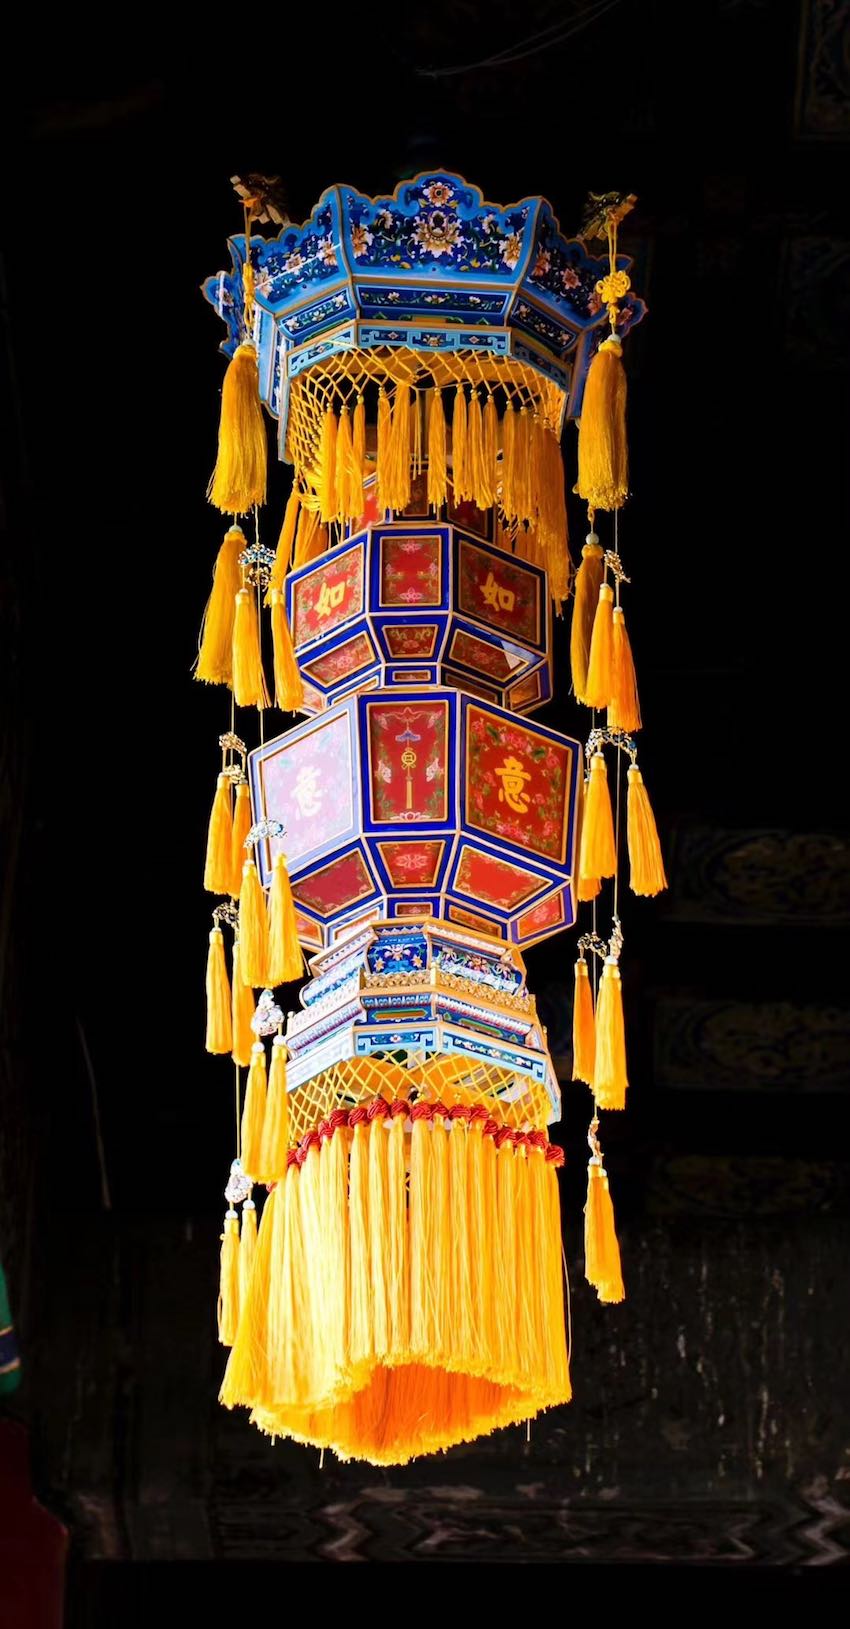 自貢燈匠復刻的宮燈。自貢海天文化有限公司供圖